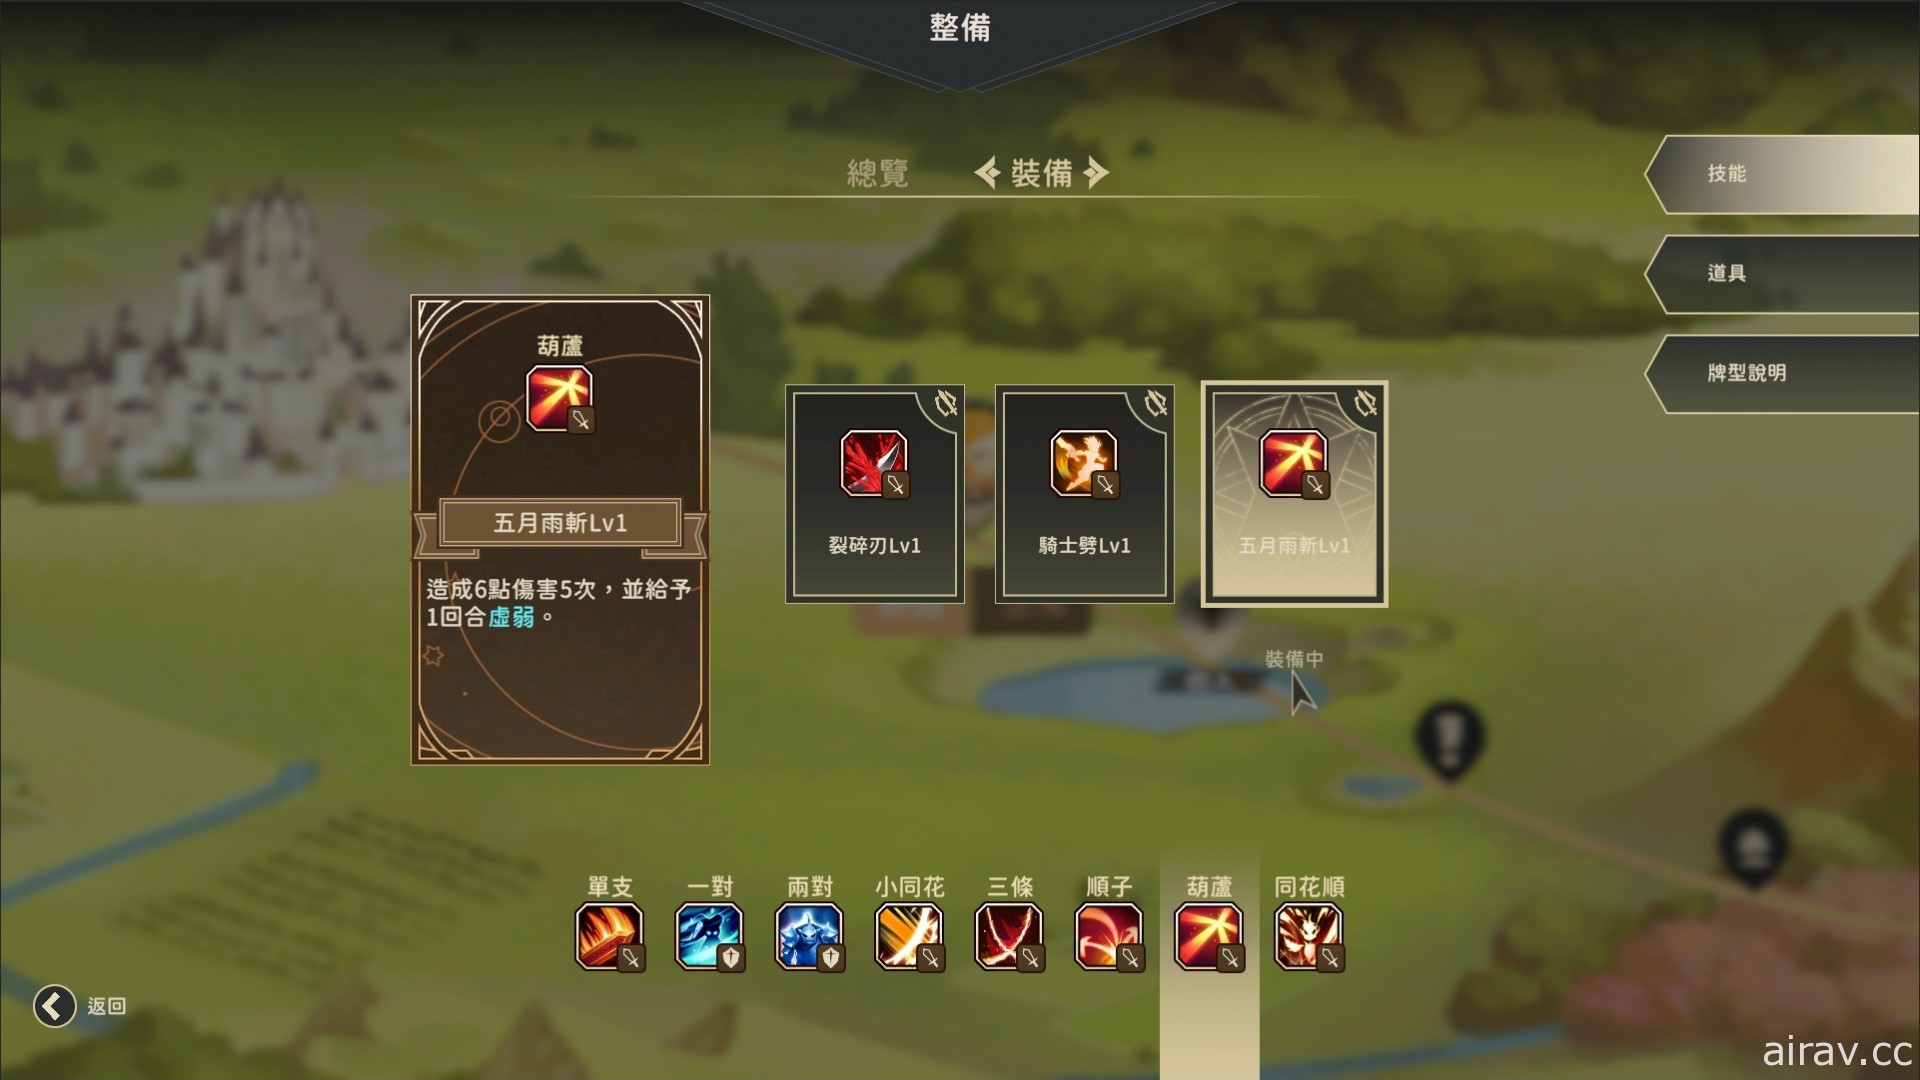 結合撲克等要素策略遊戲《星詠之詩 Zoeti》釋出新戰鬥畫面